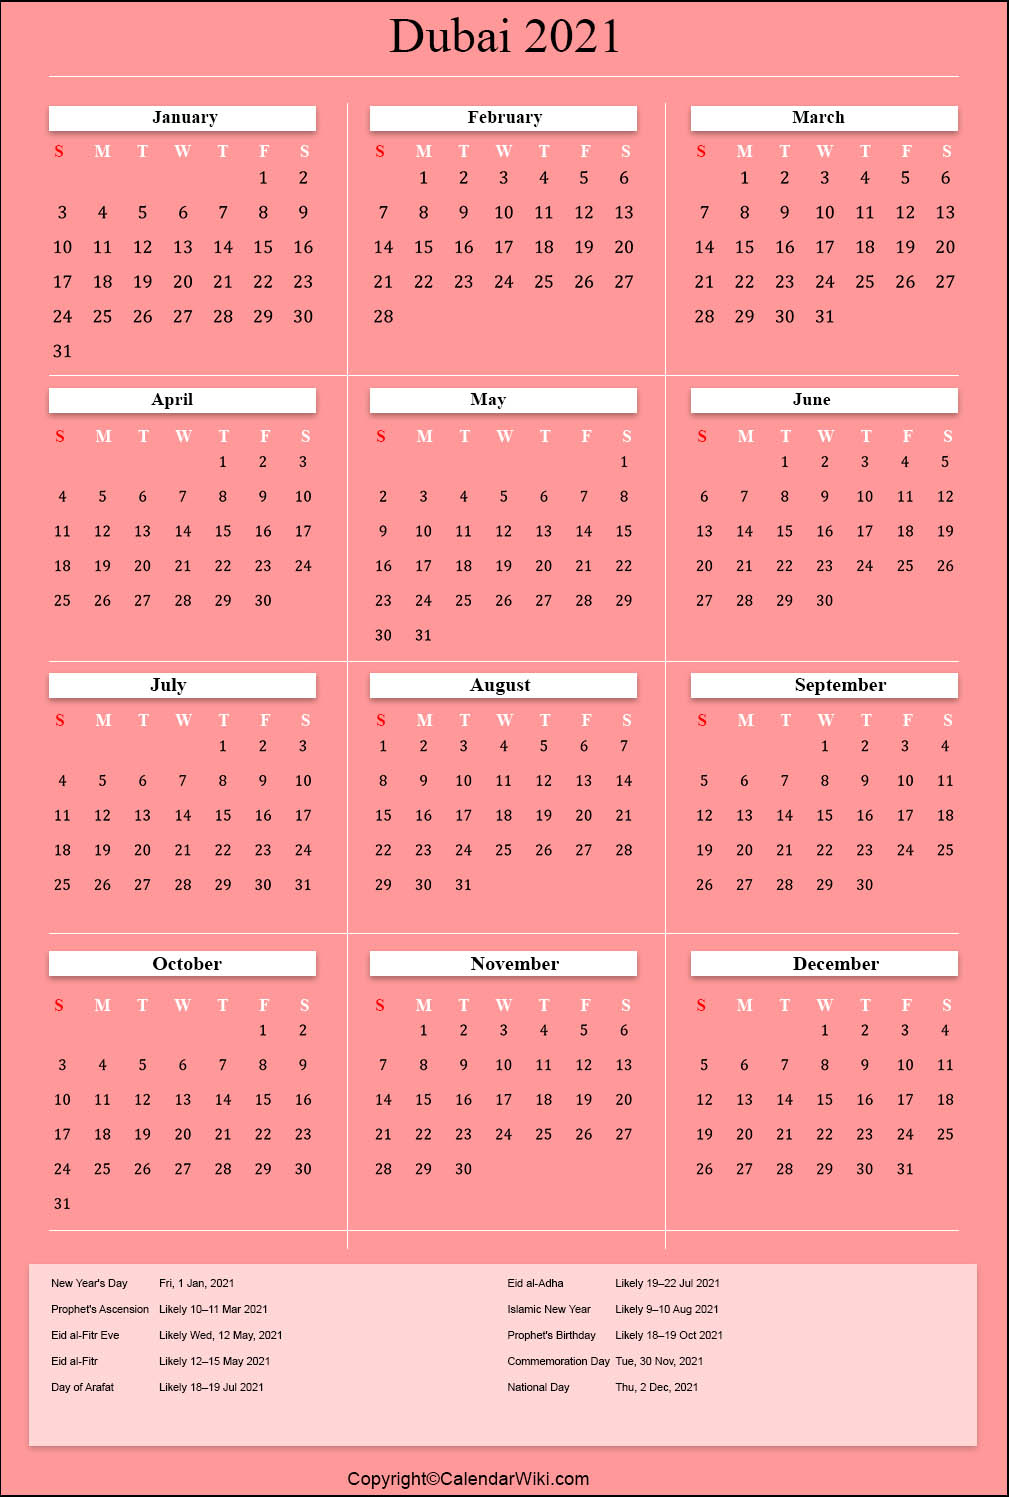 printable-dubai-calendar-2021-with-holidays-public-holidays